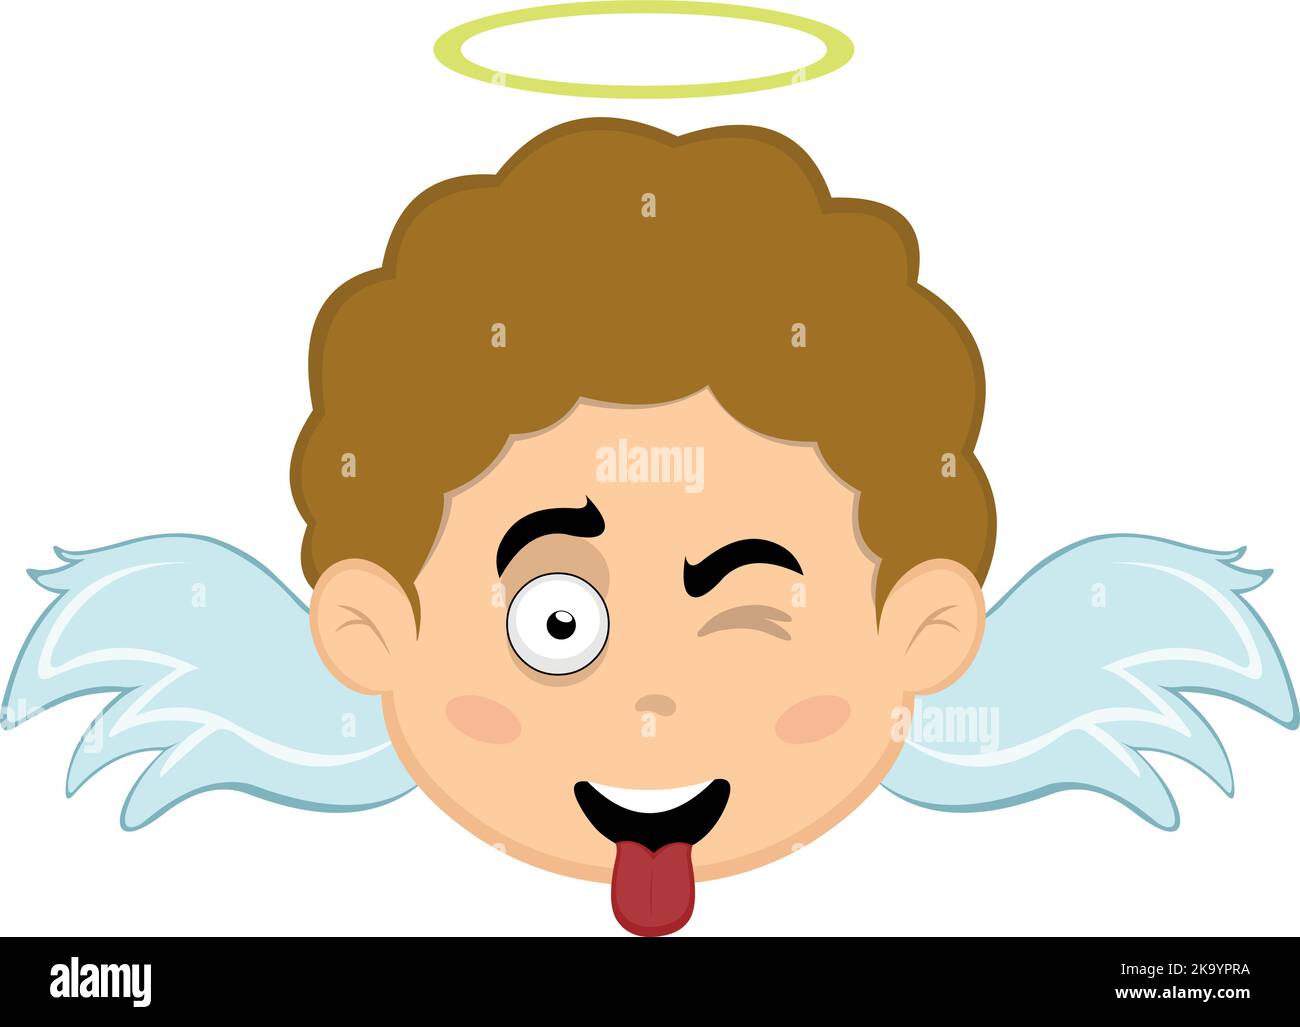 Vektor-Illustration eines Kindes Engel Karikatur zwinkend und mit seiner Zunge aus Stock Vektor